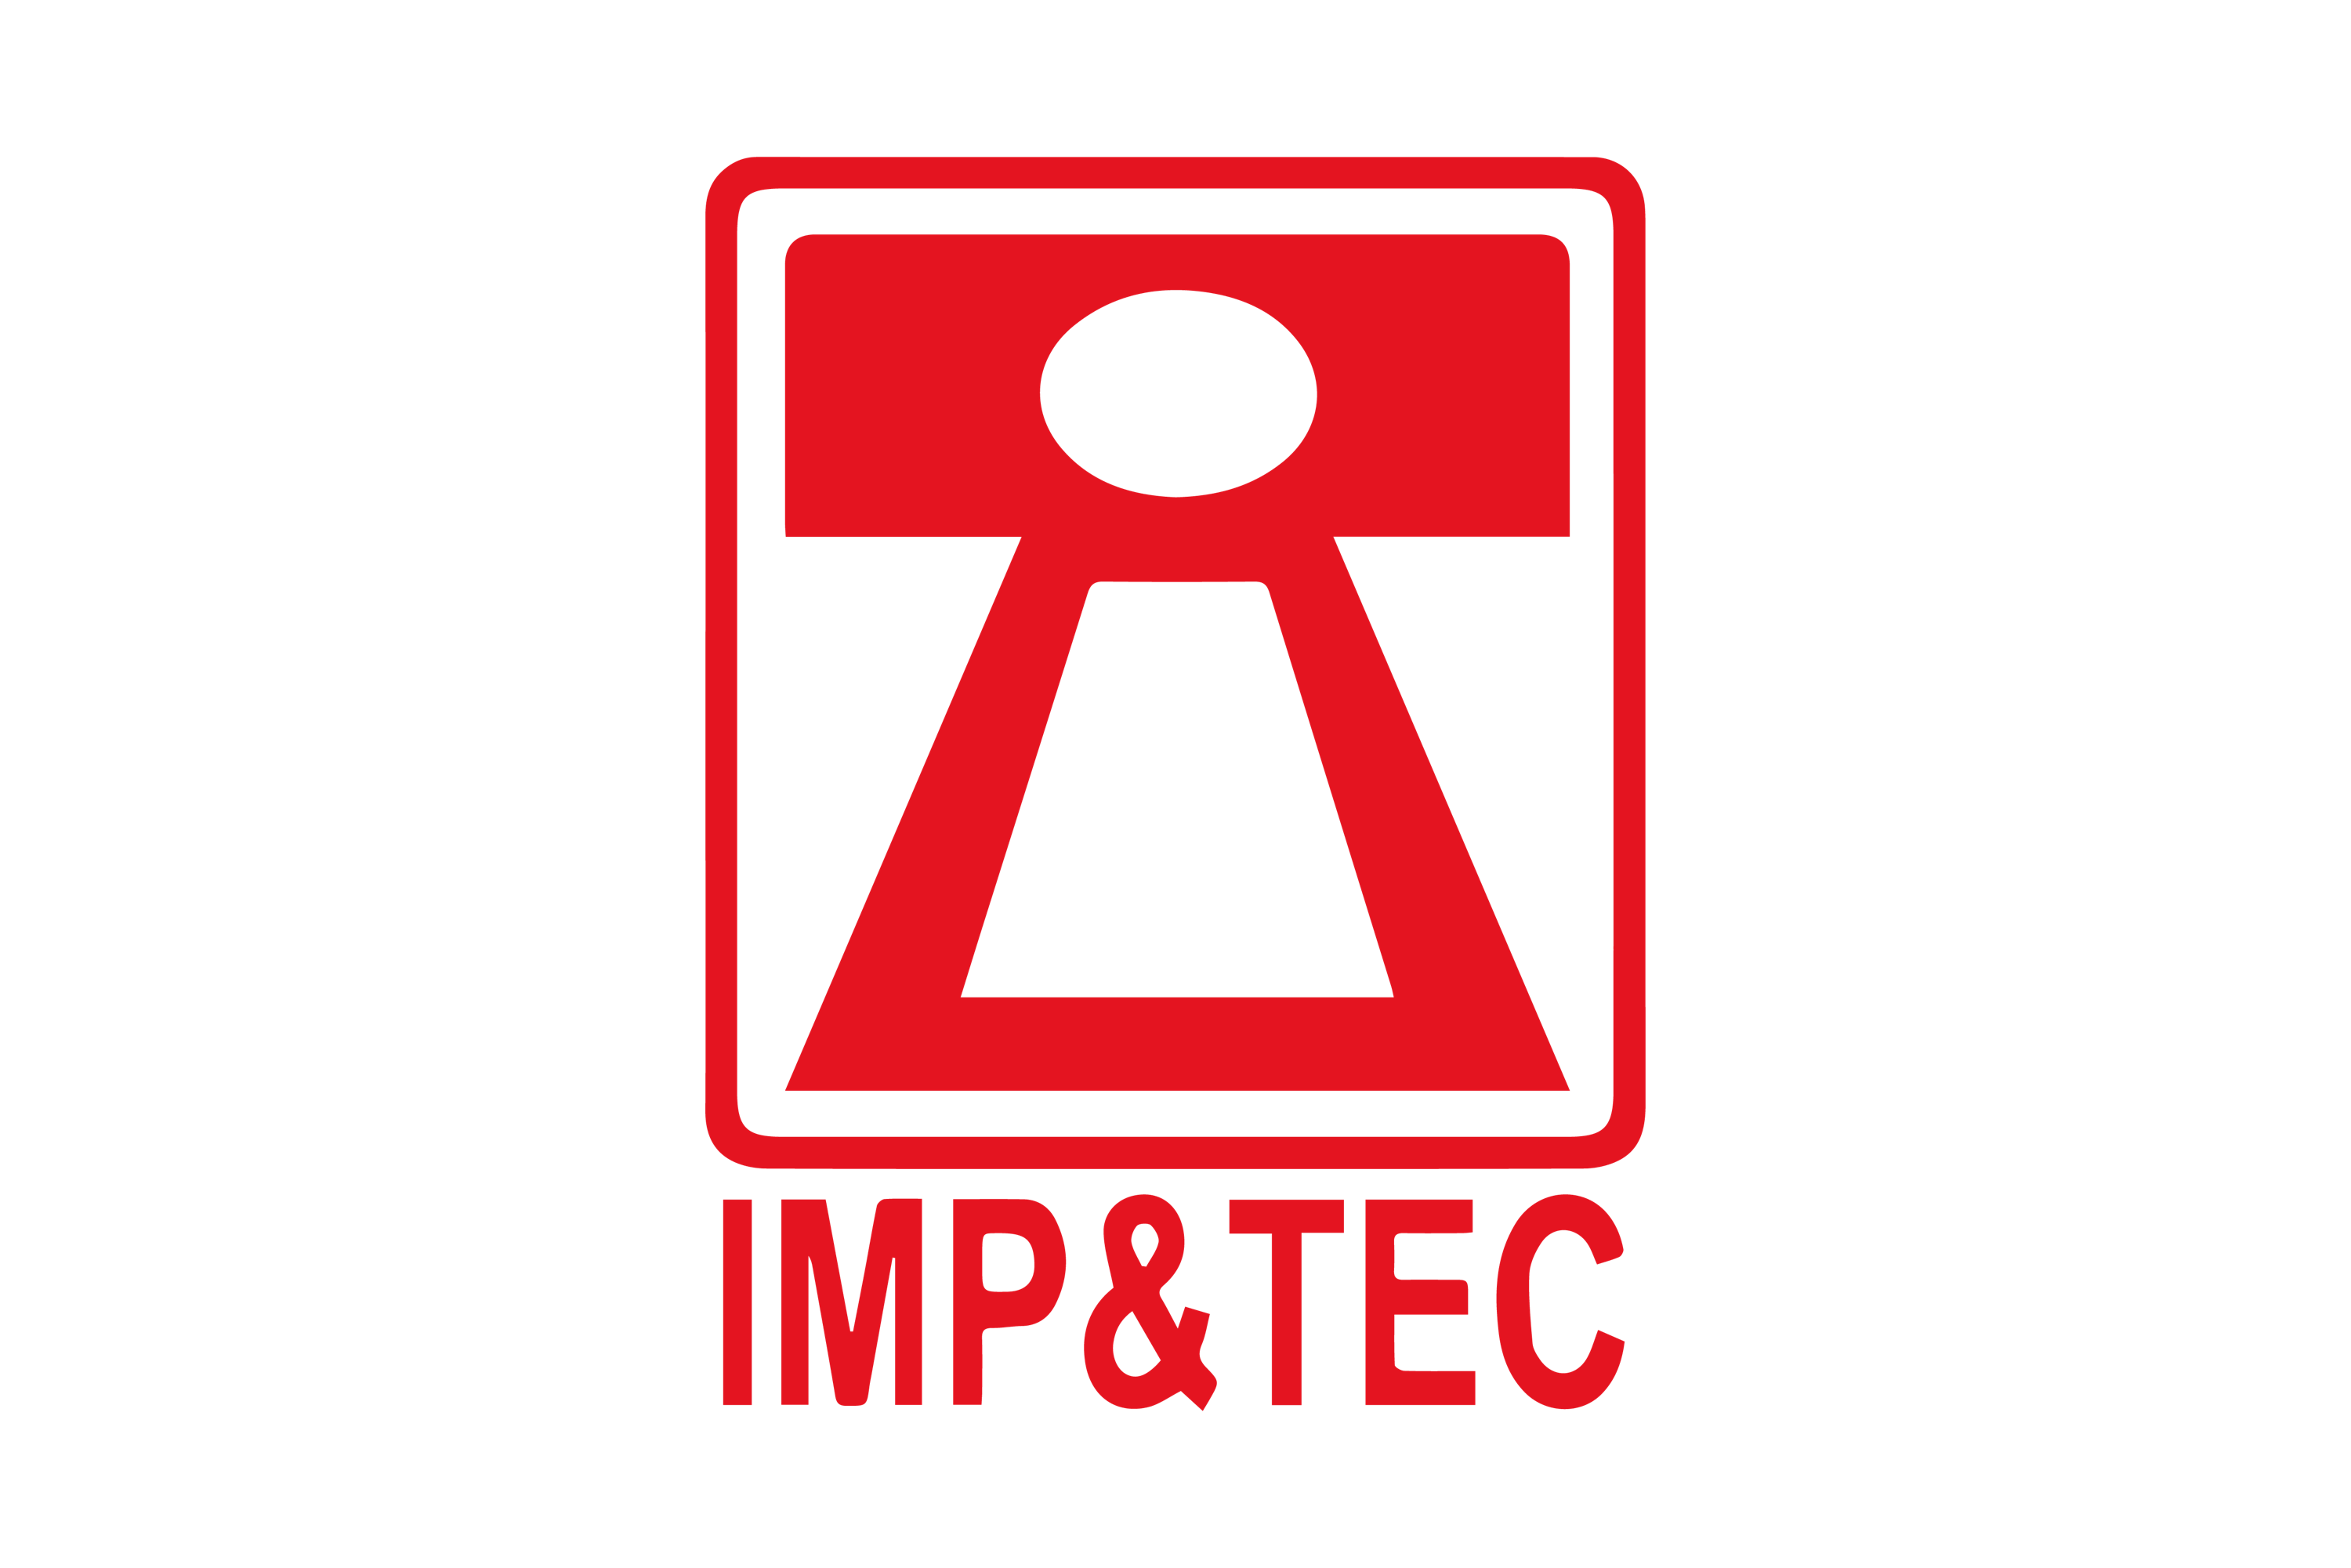 IMP&TEC